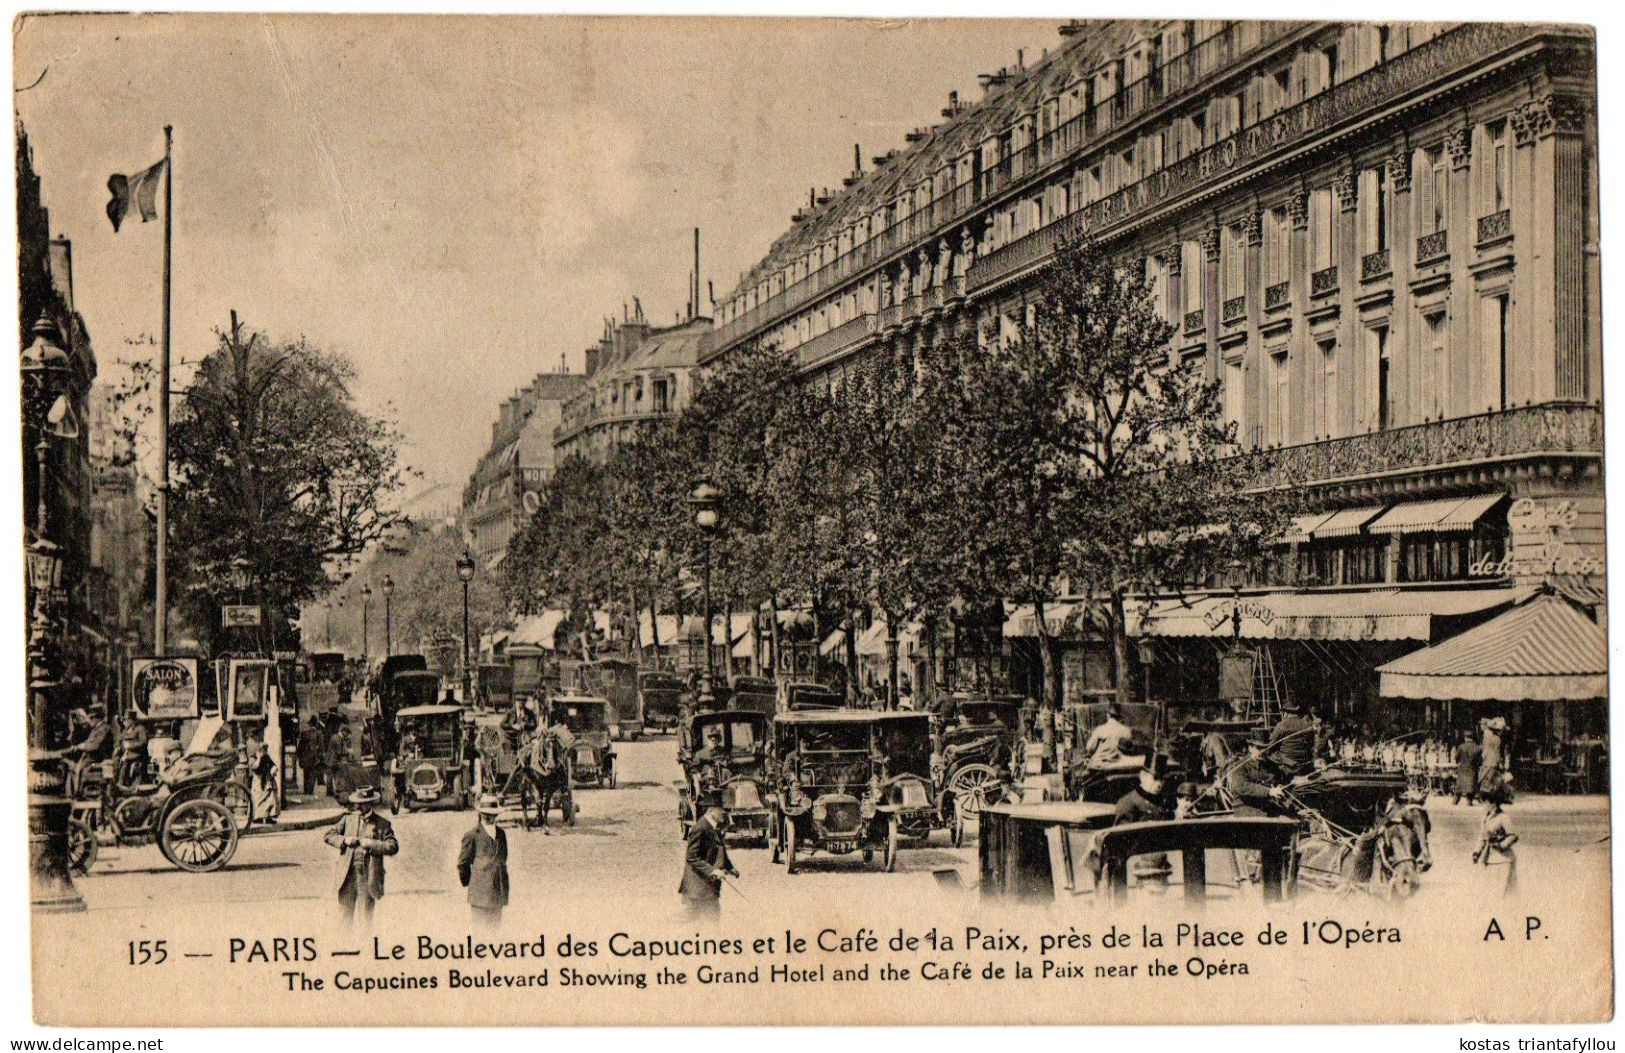 1.8.1 FRANCE, PARIS, LE BOULEVARD DES CAPUCINES, CAFE DE LA PAIX, PRES DE LA PLACE DE L' OPERA, 1921, POSTCARD - District 09